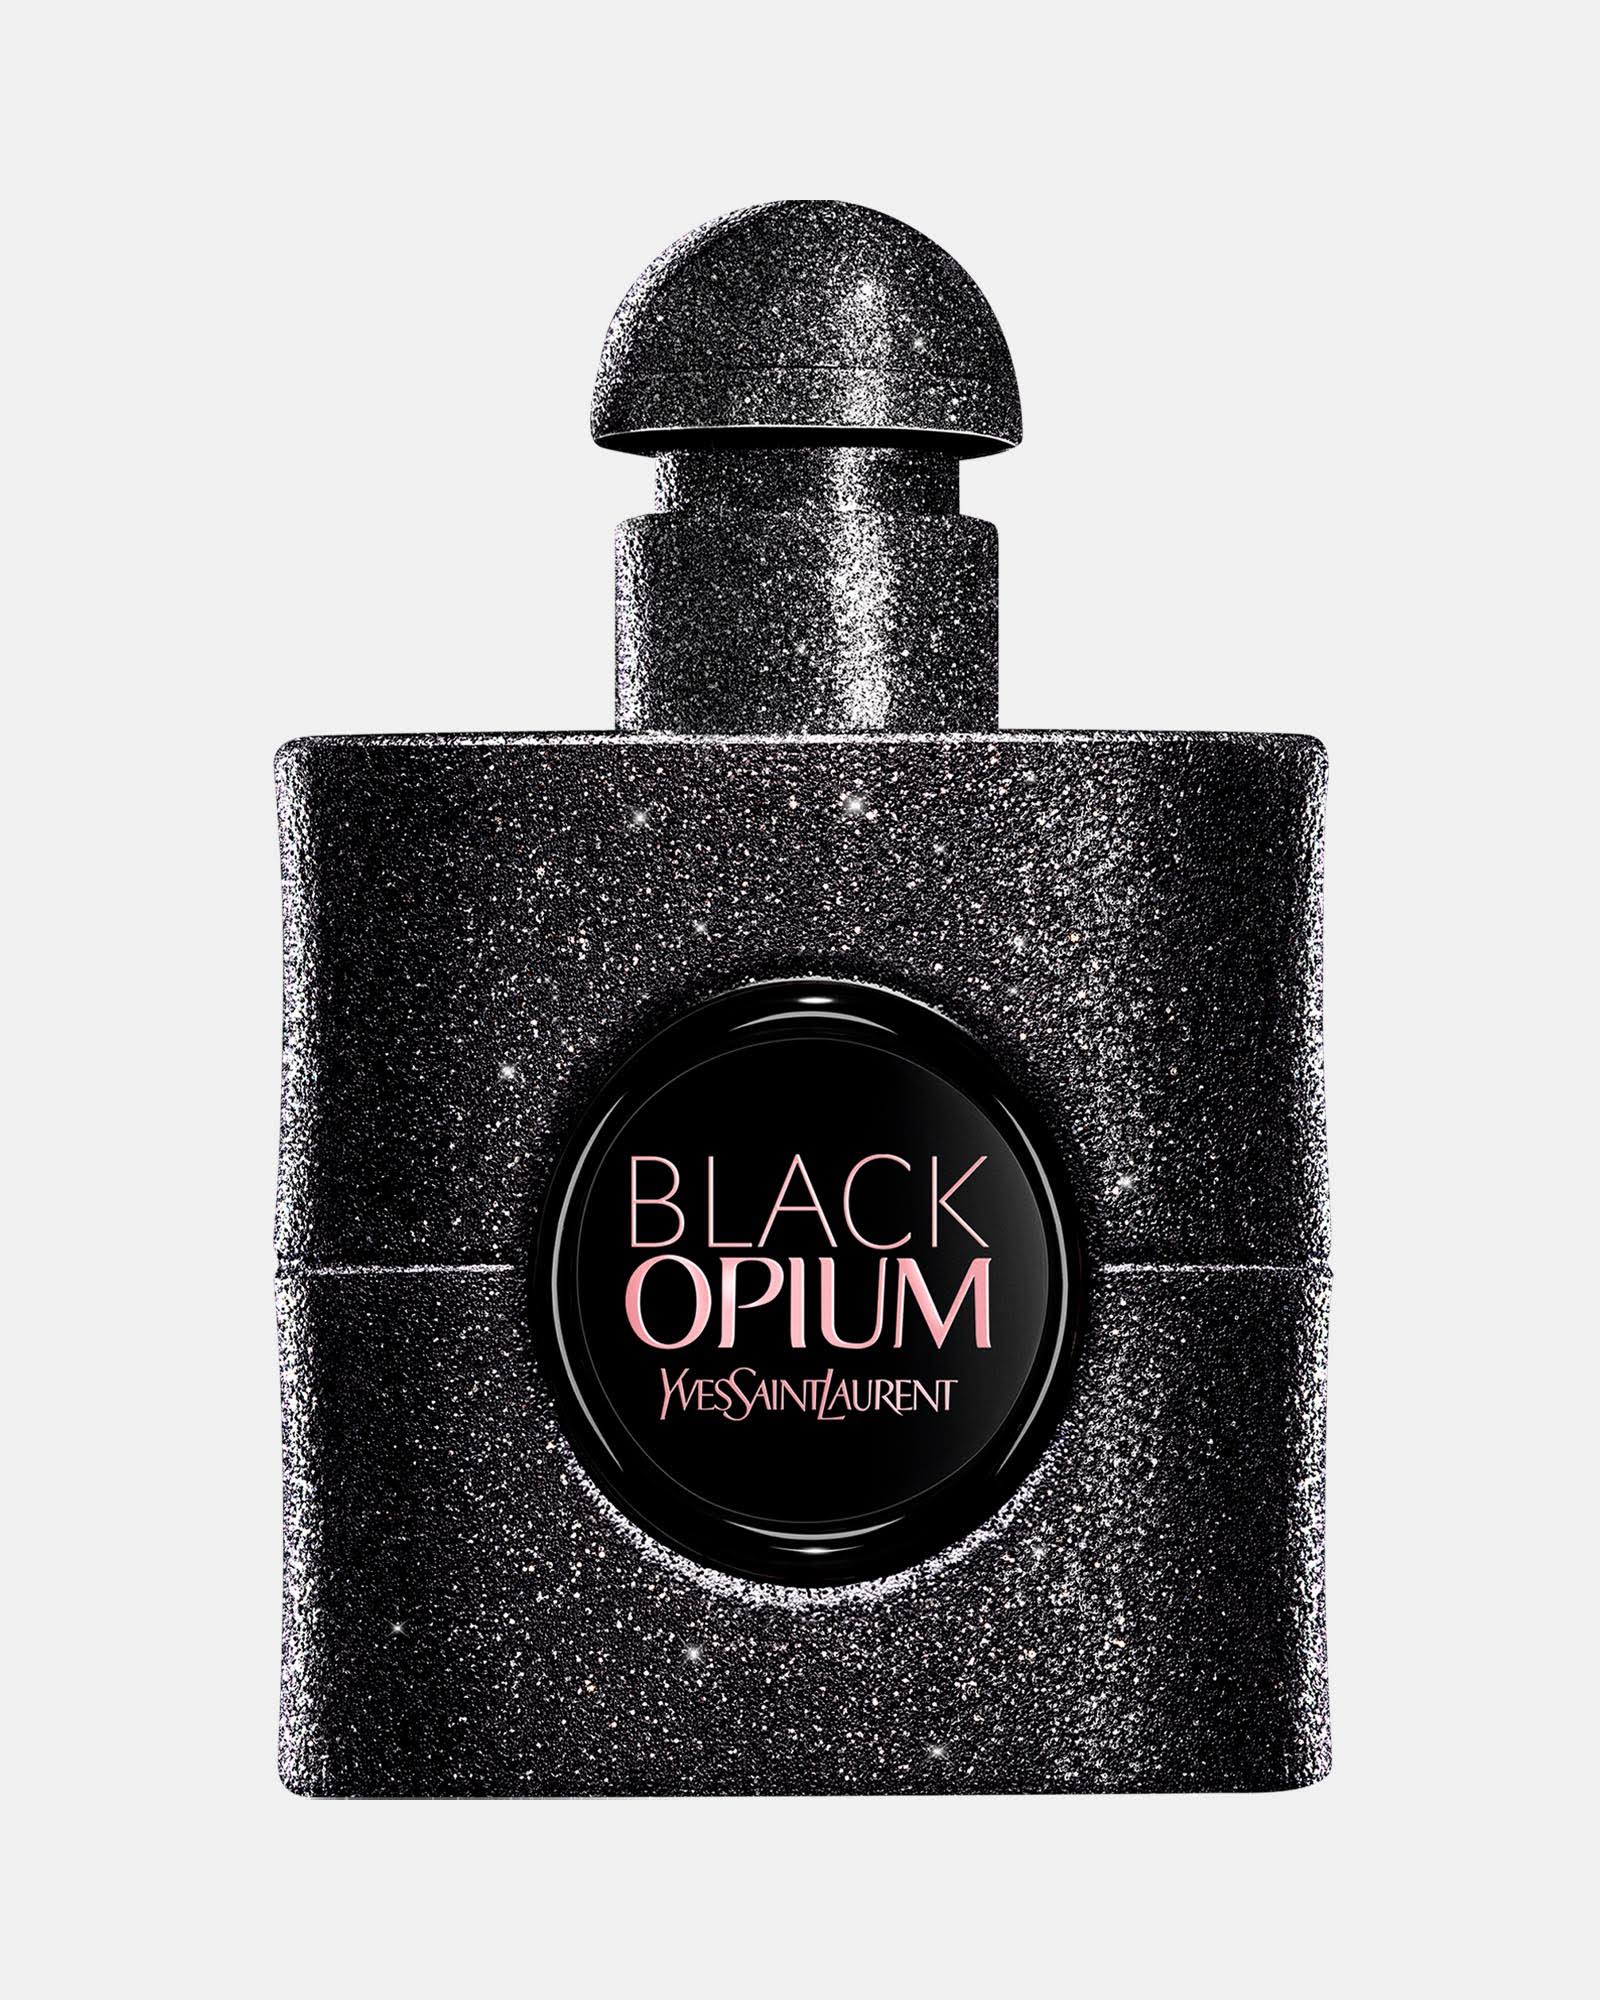 Yves Saint Laurent Black Opium Eau De Parfum Extreme Spray 30ml